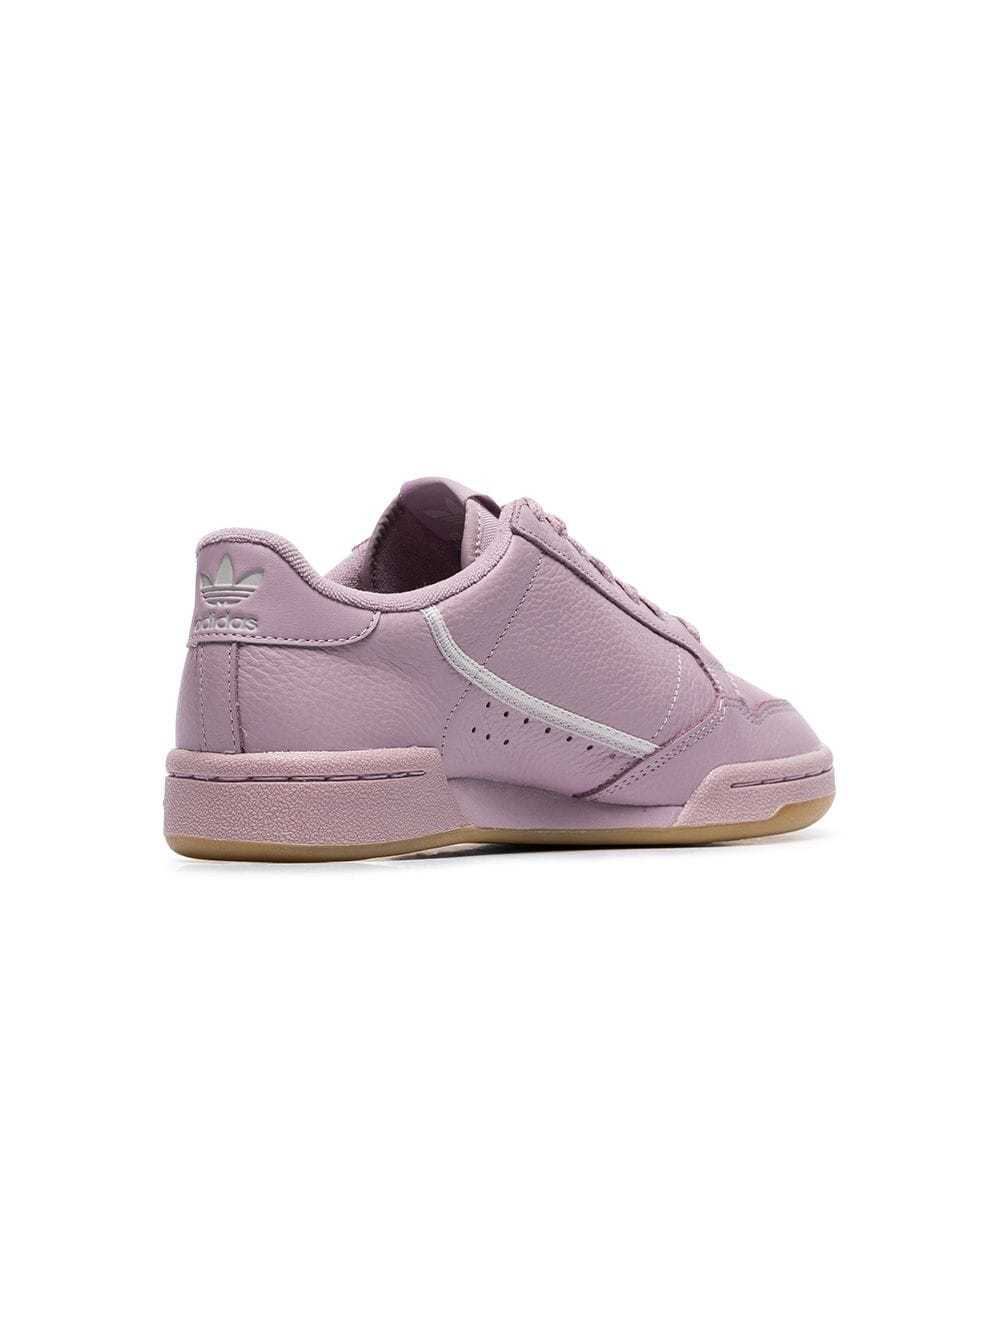 light purple sneakers